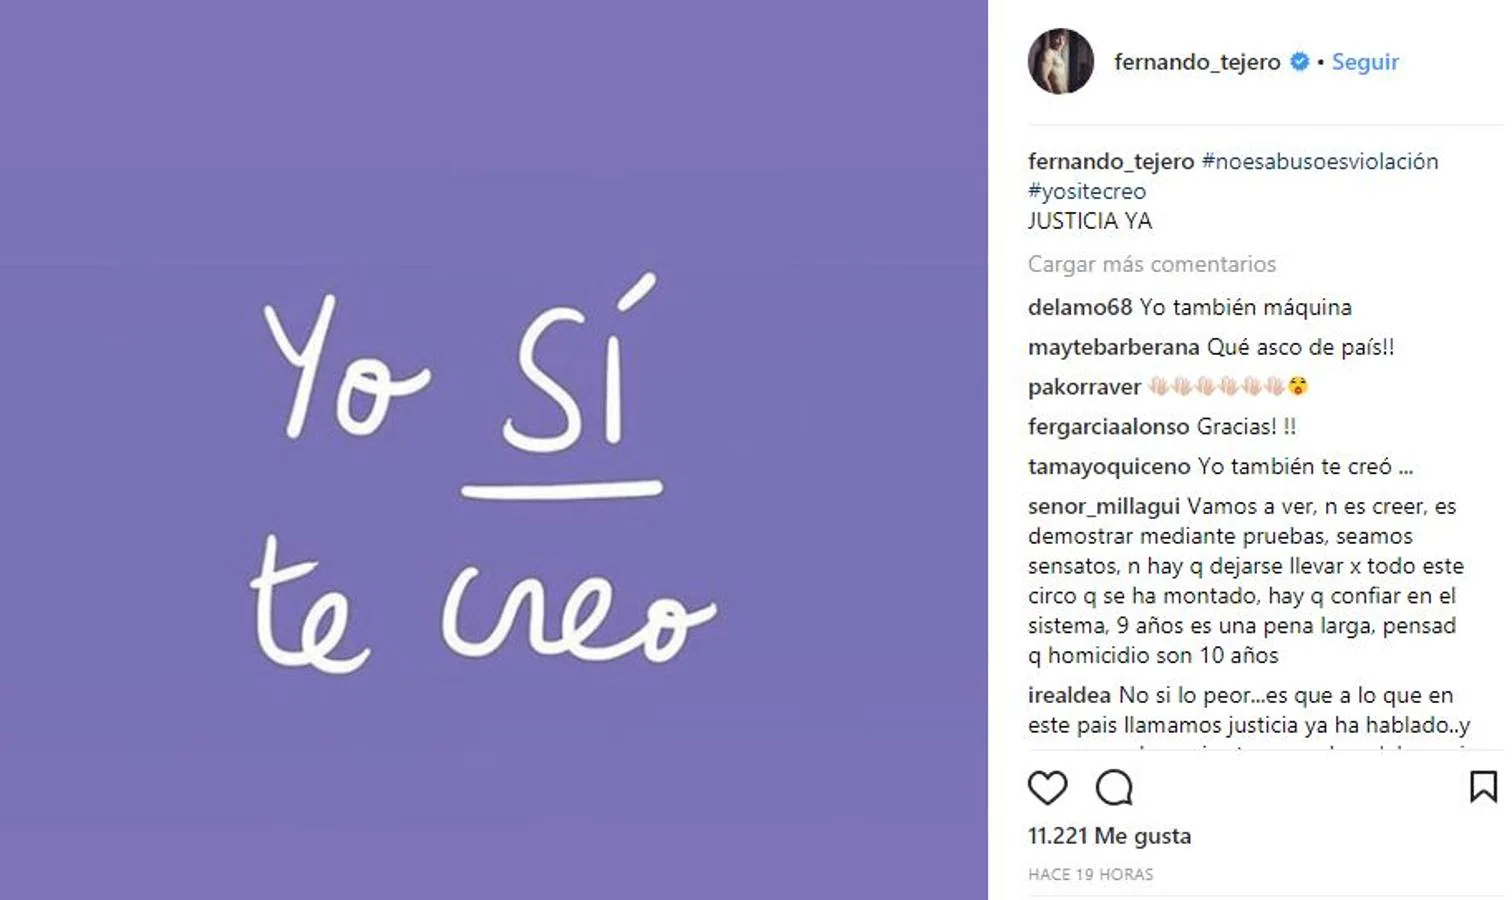 Fernando Tejero. El actor de «La que se avecina» se une a la foto que inunda las redes sociales junto a un hashtag que dice #noesabusoesviolación